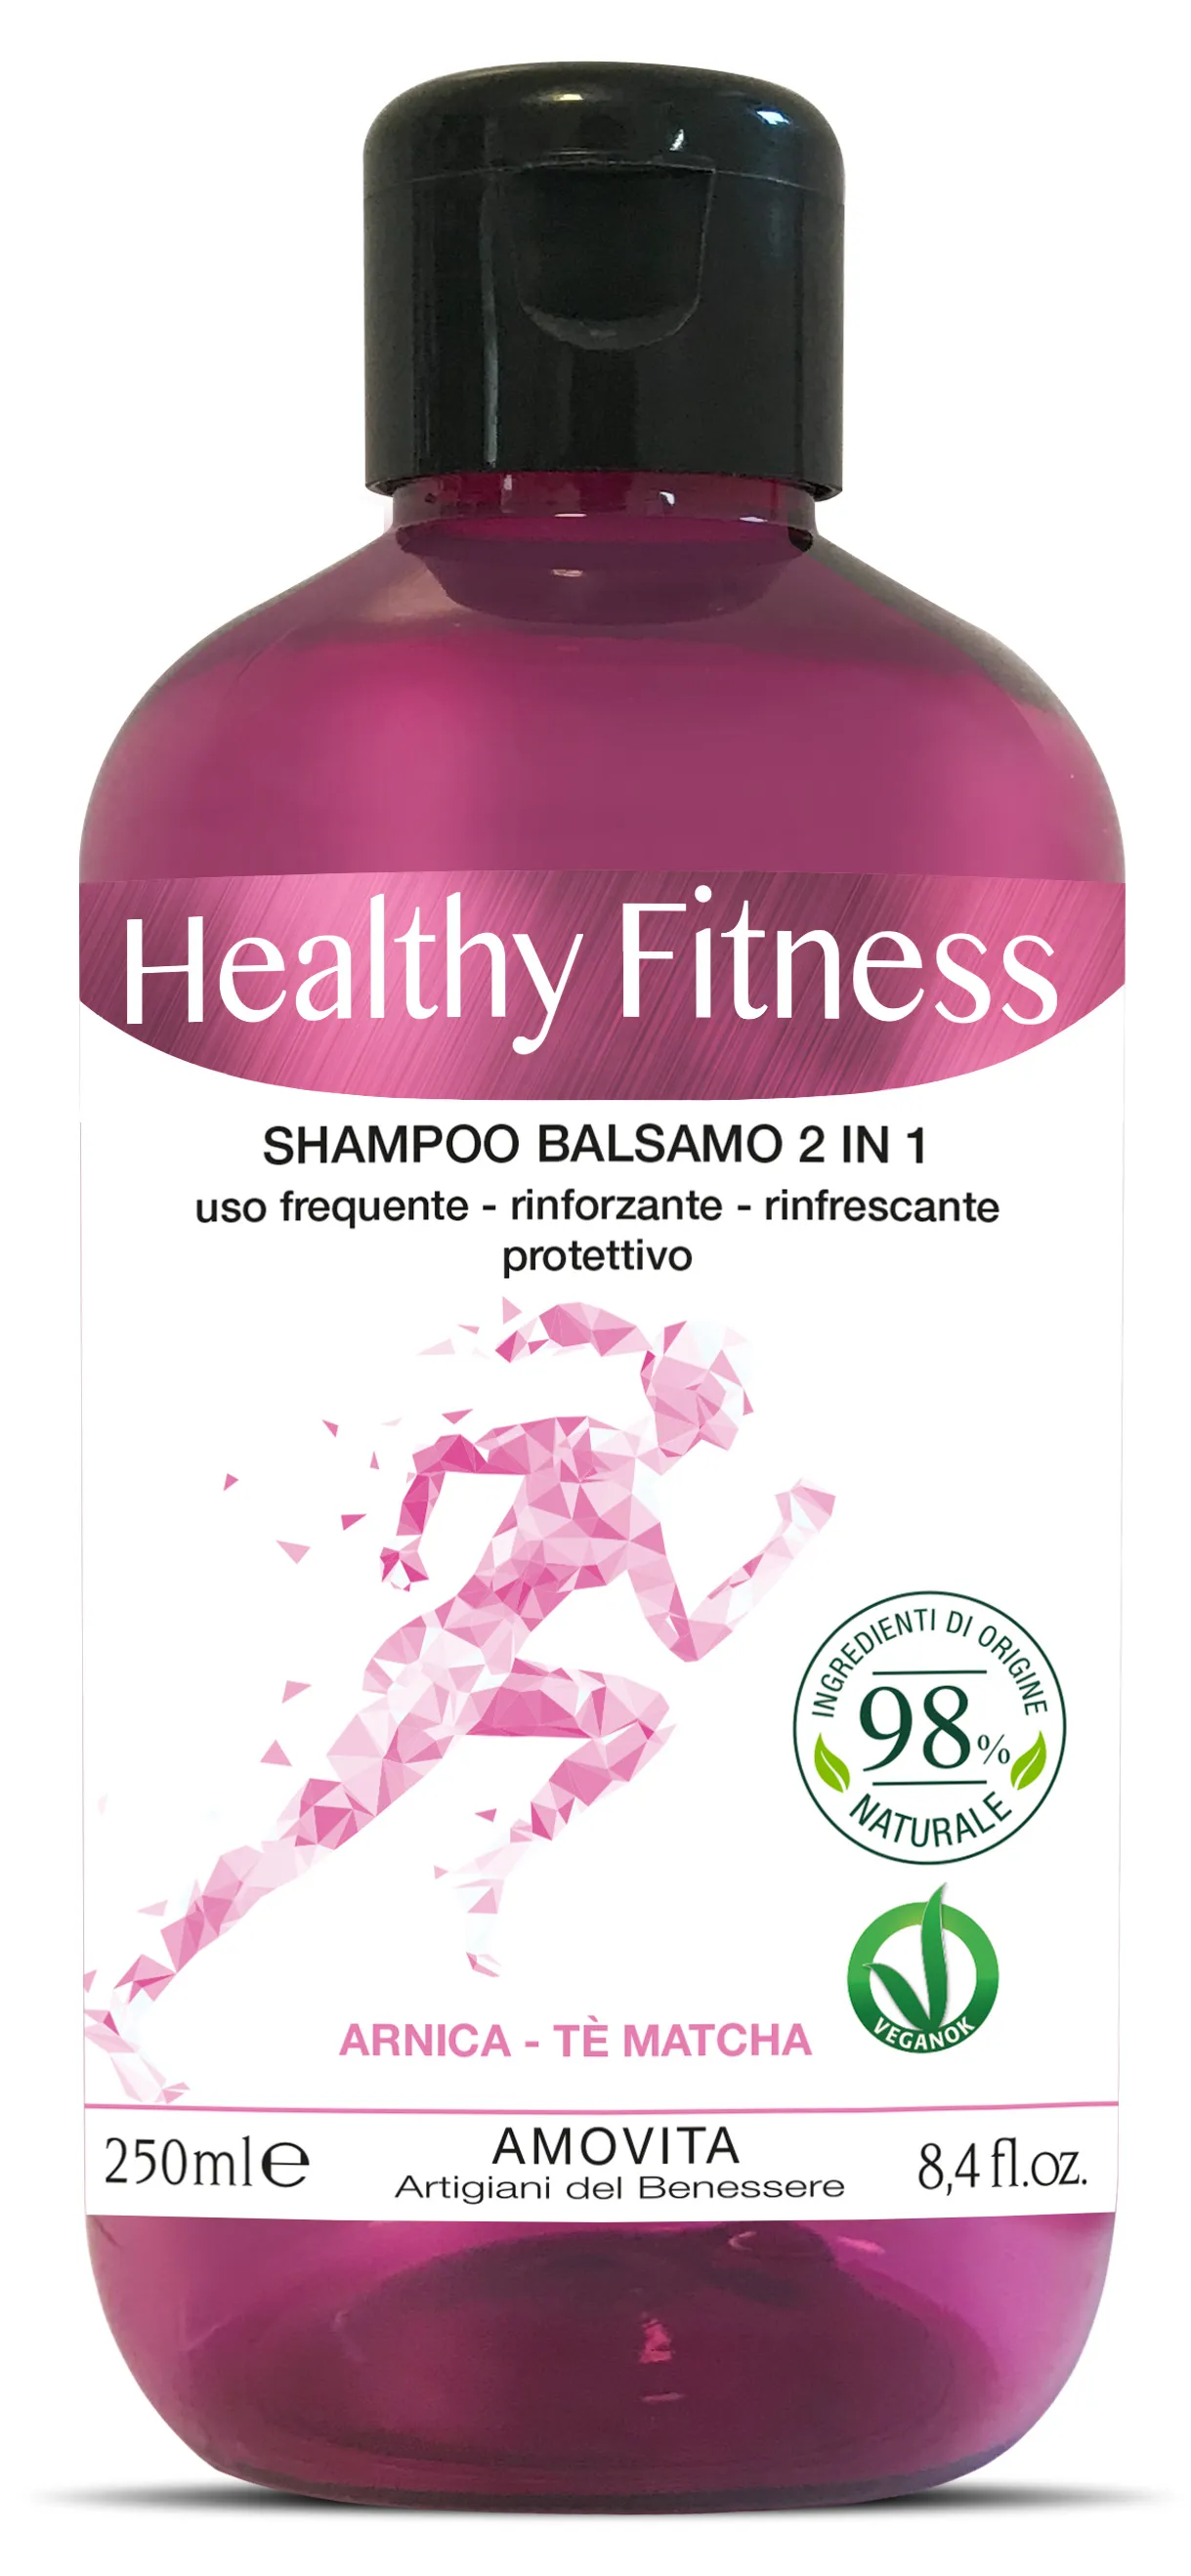 "AMOVITA Shampoo Sport 2 1 Uso 0,5 m Per la Cura Dei Capelli 250 ml"